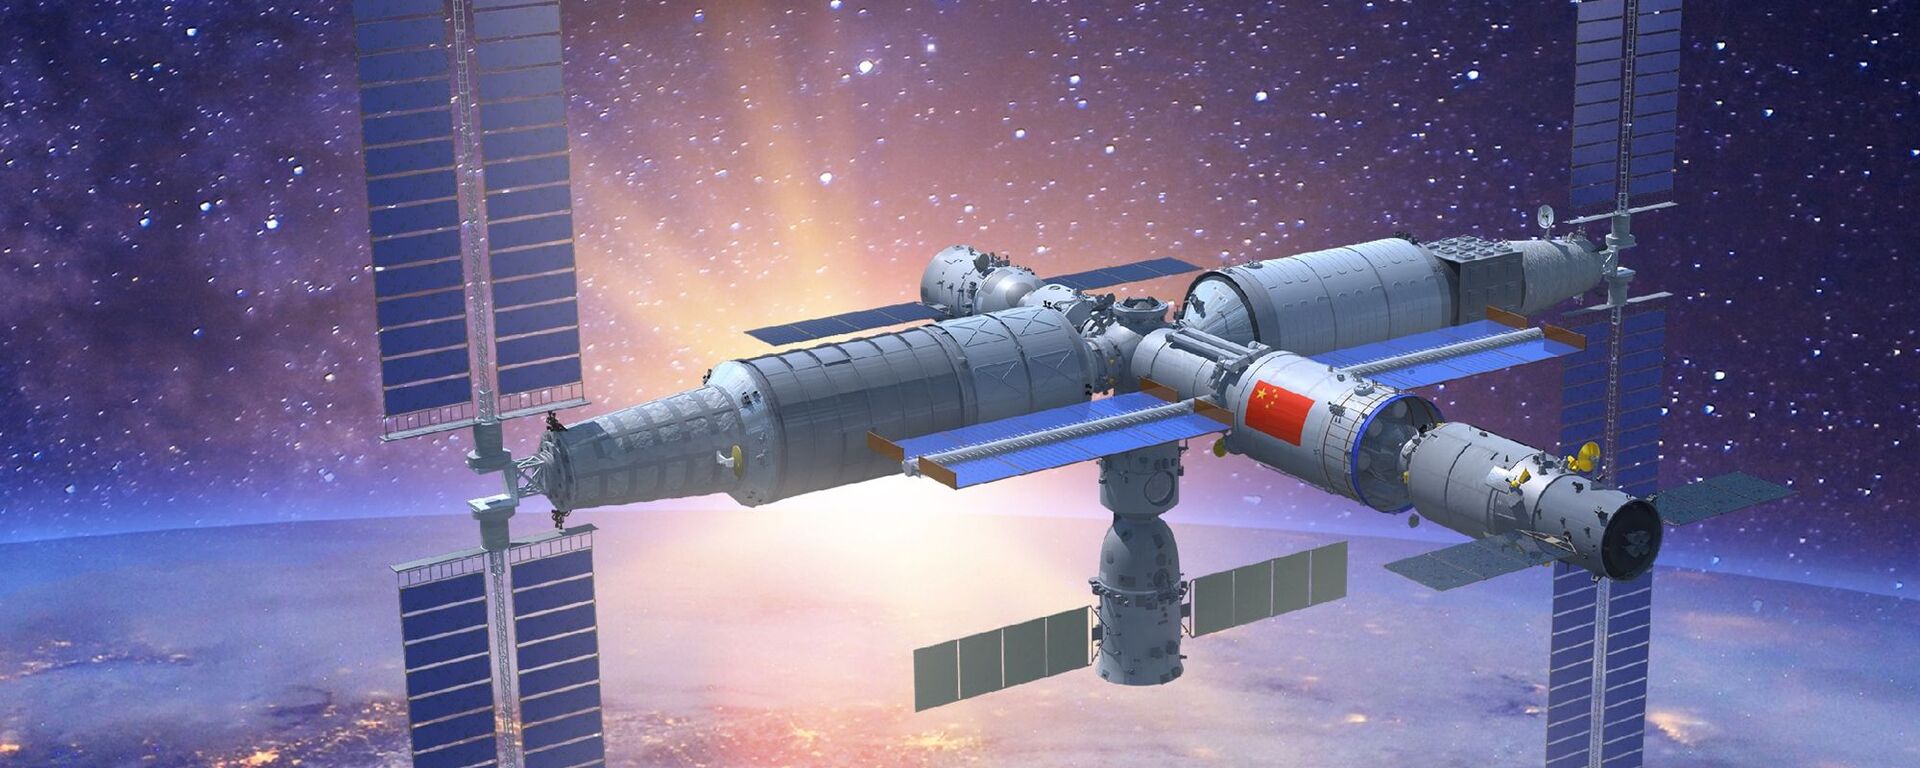 Representação em 3D da estação espacial Tiangong com todos os módulos instalados - Sputnik Brasil, 1920, 24.05.2022